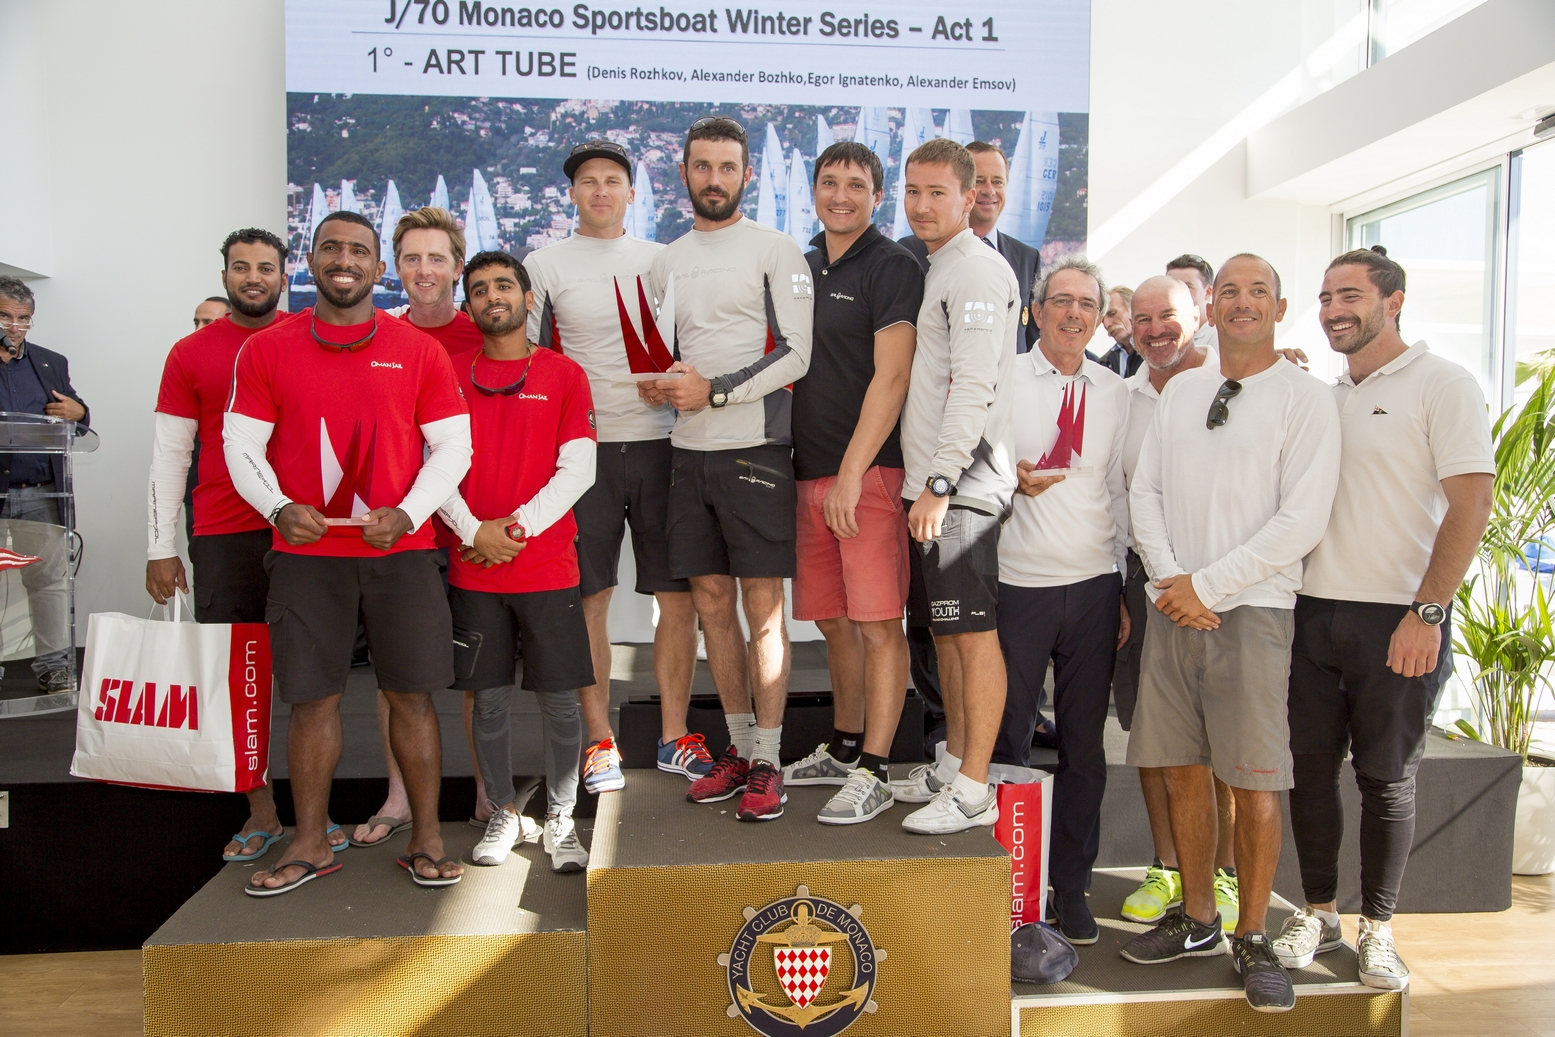 Победители первого этапа зимней регаты Monaco Sportsboat Winter Series